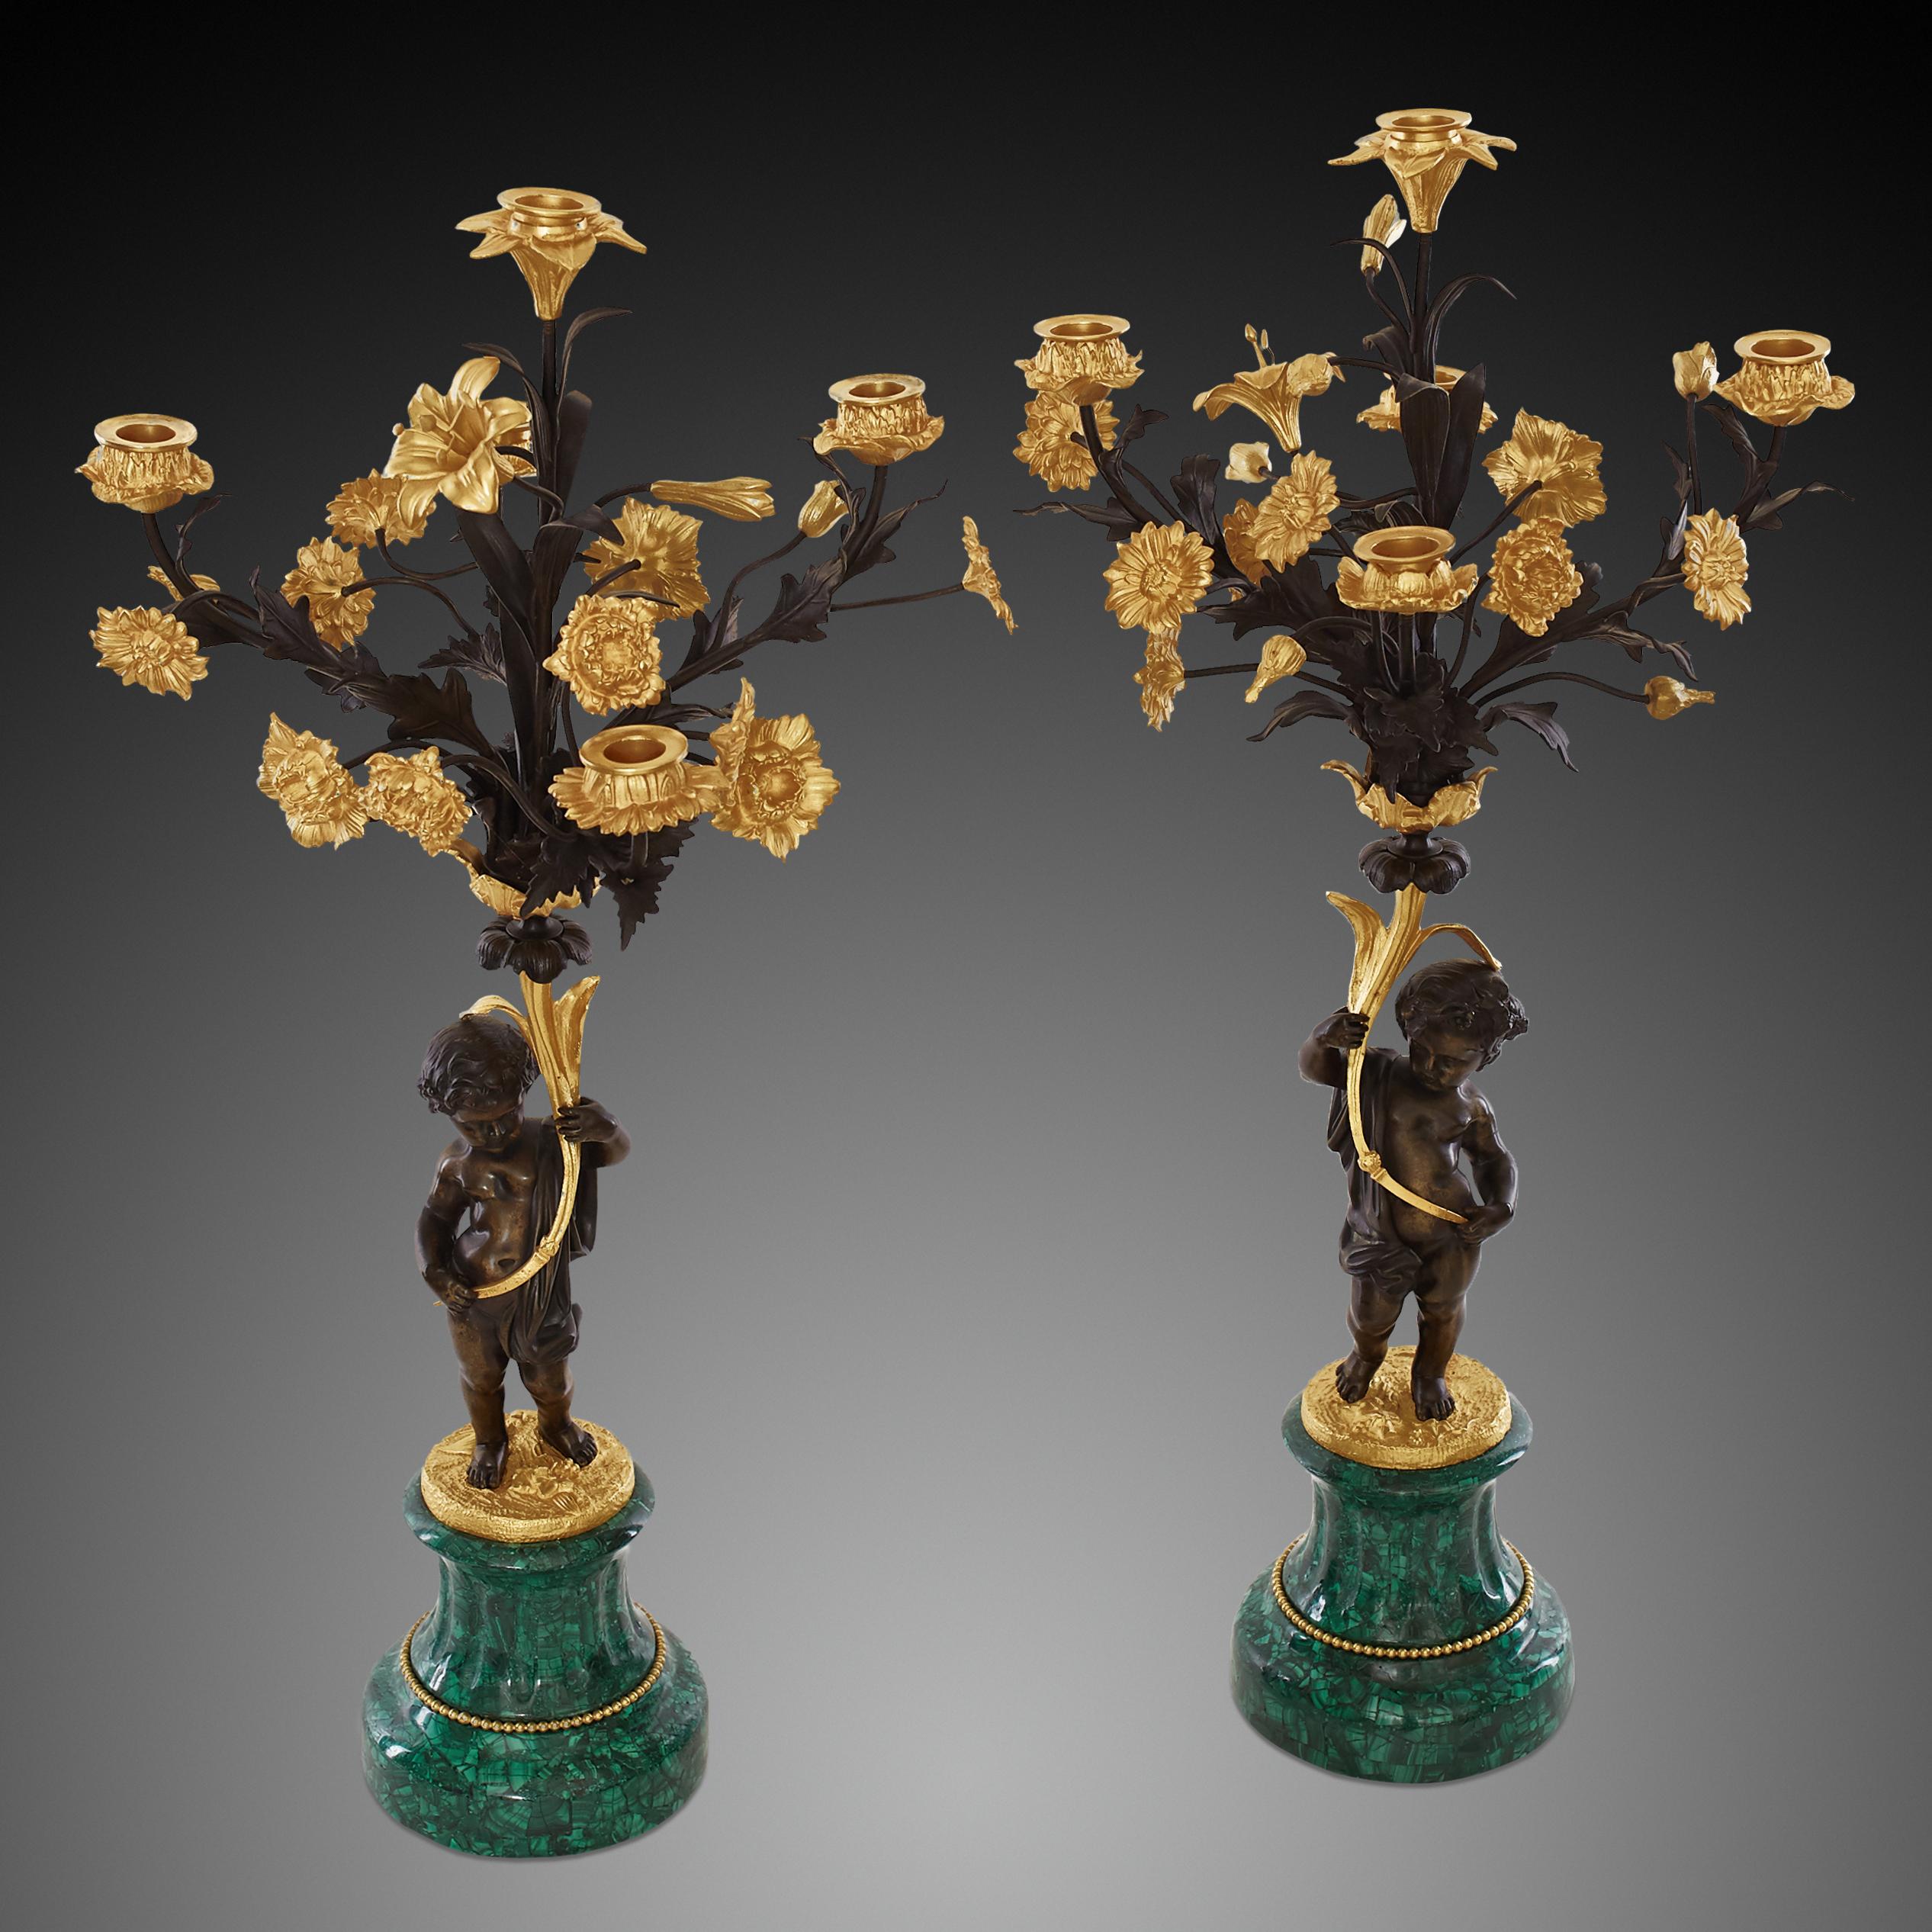 Ein Paar fünfarmige Kerzenleuchter
Napoleonischer Stil.
Engel aus patinierter Bronze, die einen Blumenstrauß aus vergoldeter Bronze halten
mit geschwungenen und beblätterten Armen. Das Ganze steht auf einem Sockel aus Malachit. Eine wichtige